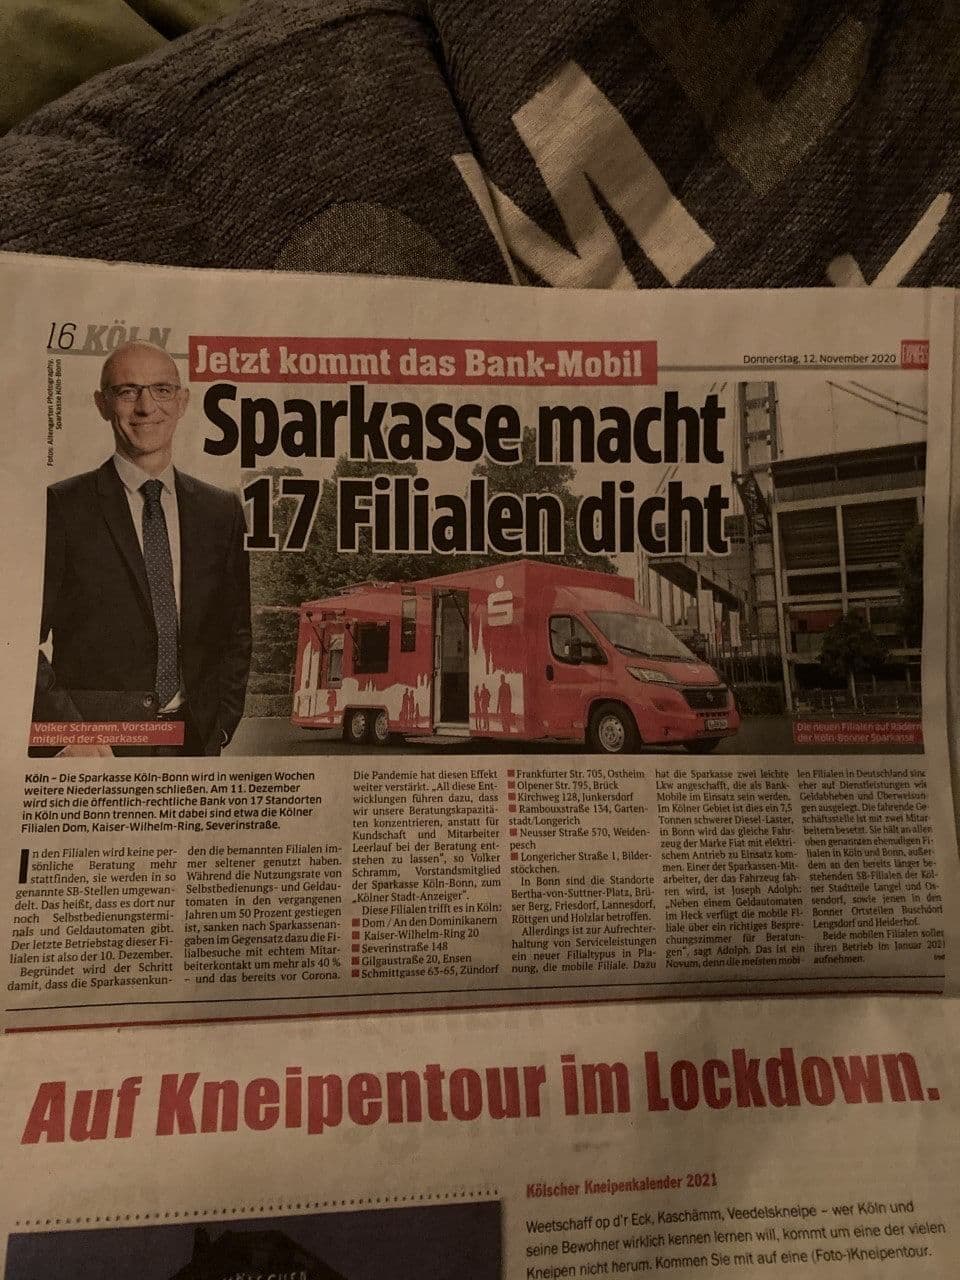 ERSTE SPARKASSEN SCHLIESSEN!!! (Kölner Express)